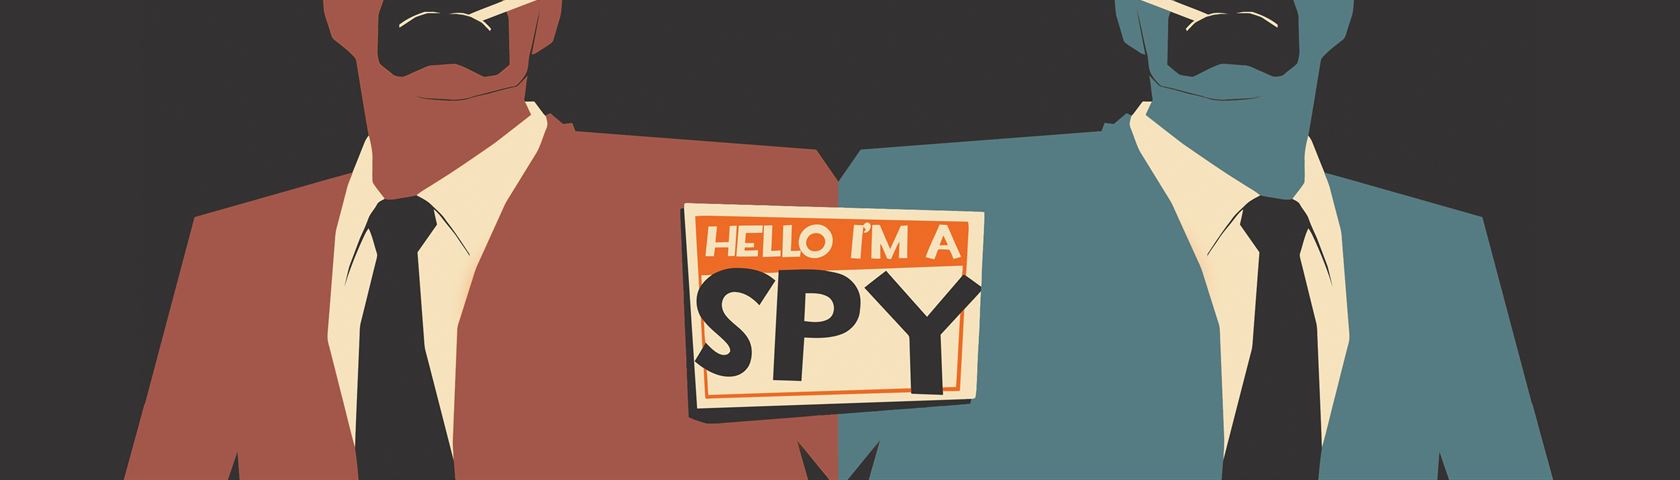 I'm a Spy